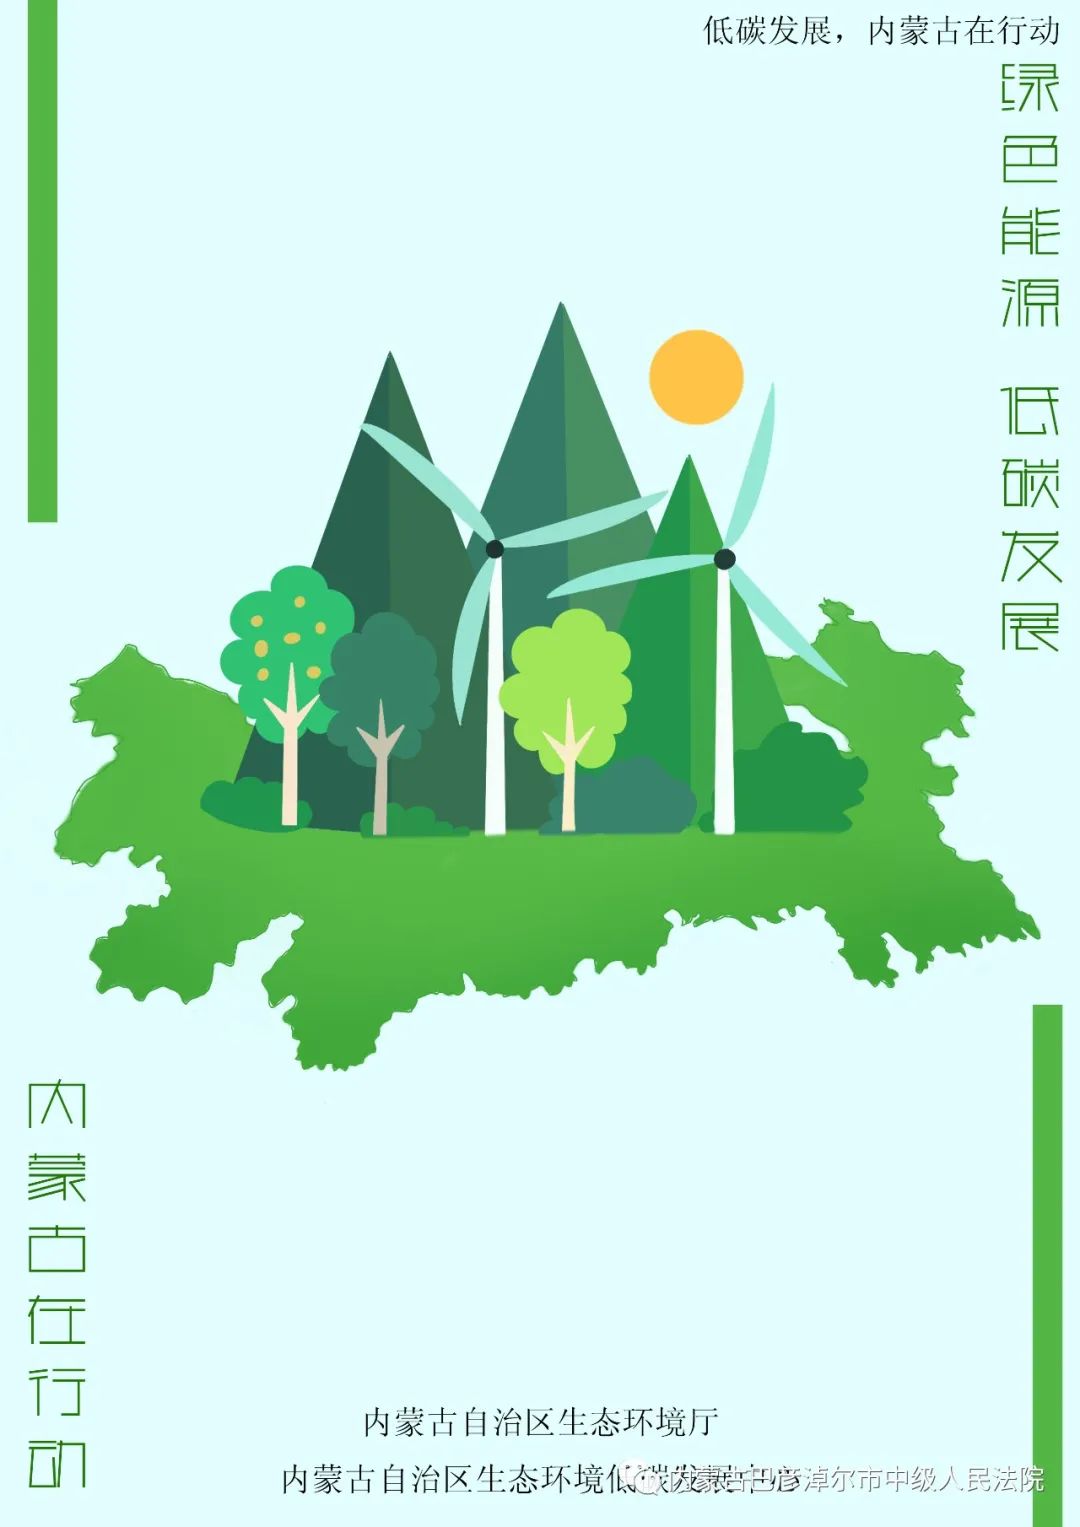 海报节能降碳绿色发展